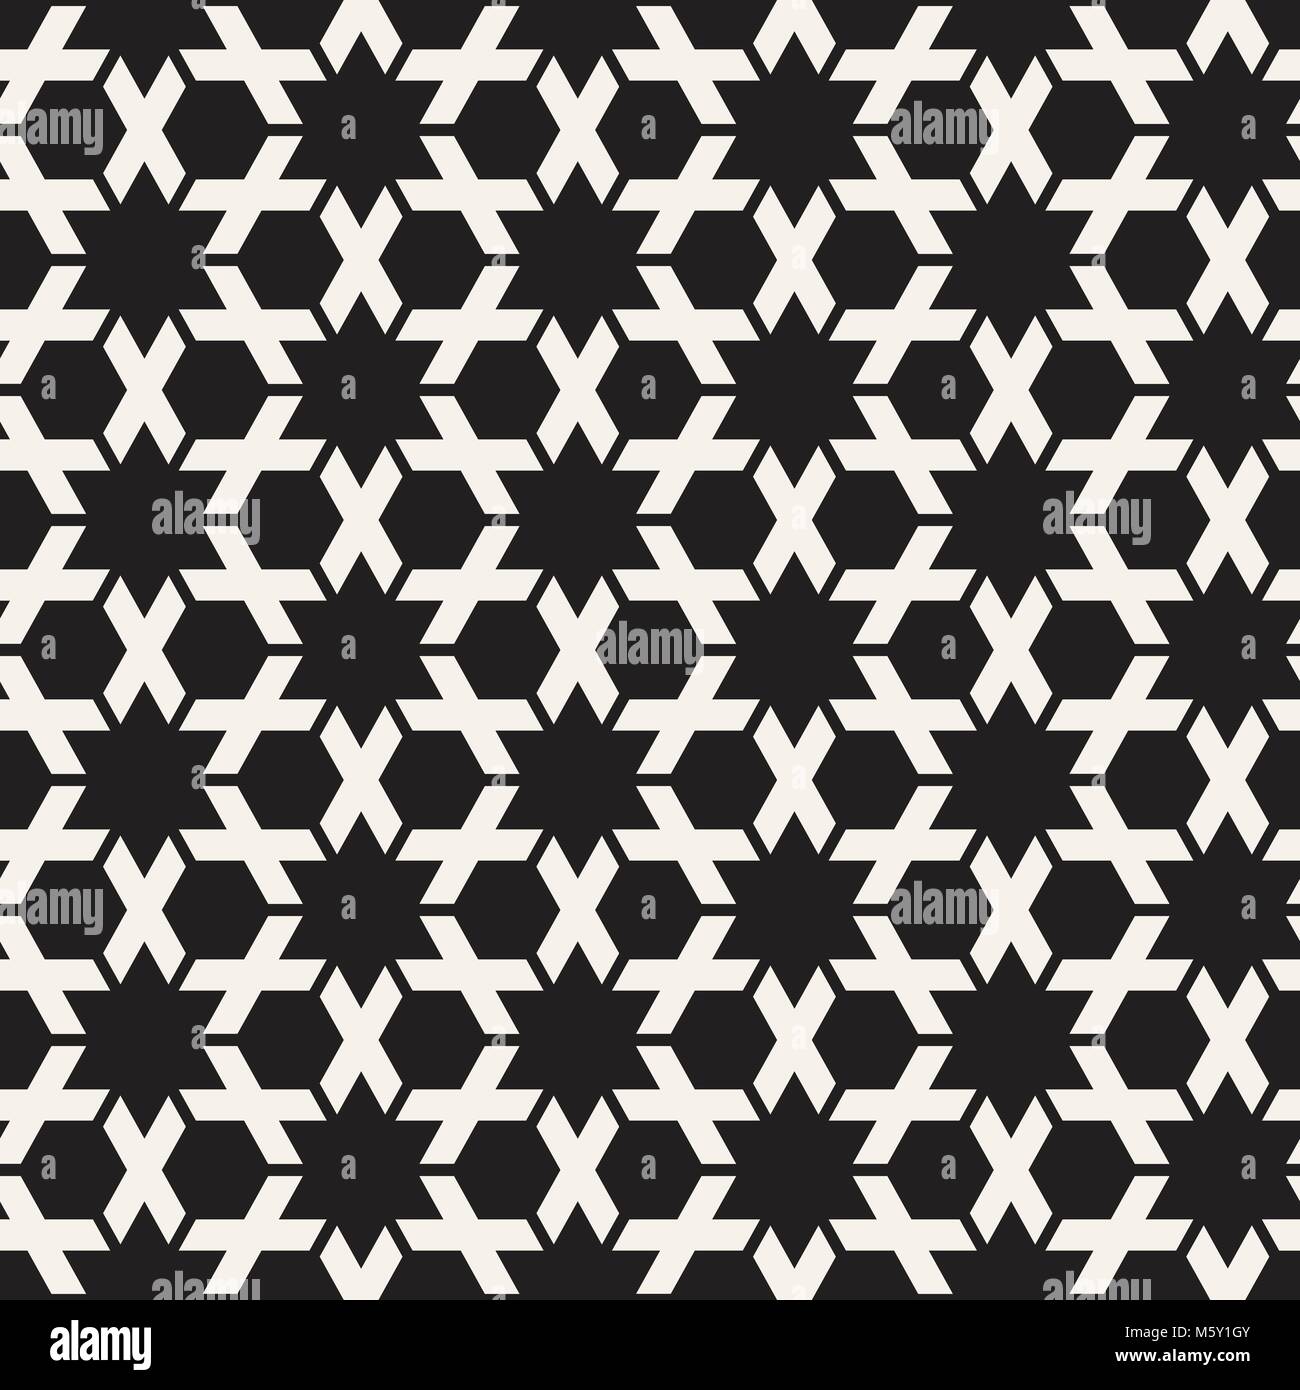 Vektor nahtlose Streifen Muster. Moderne, elegante Textur mit Schwarzweiß-Gitter. Wiederkehrende geometrische hexagonalen Gitter. Einfache lattice Design. Stock Vektor